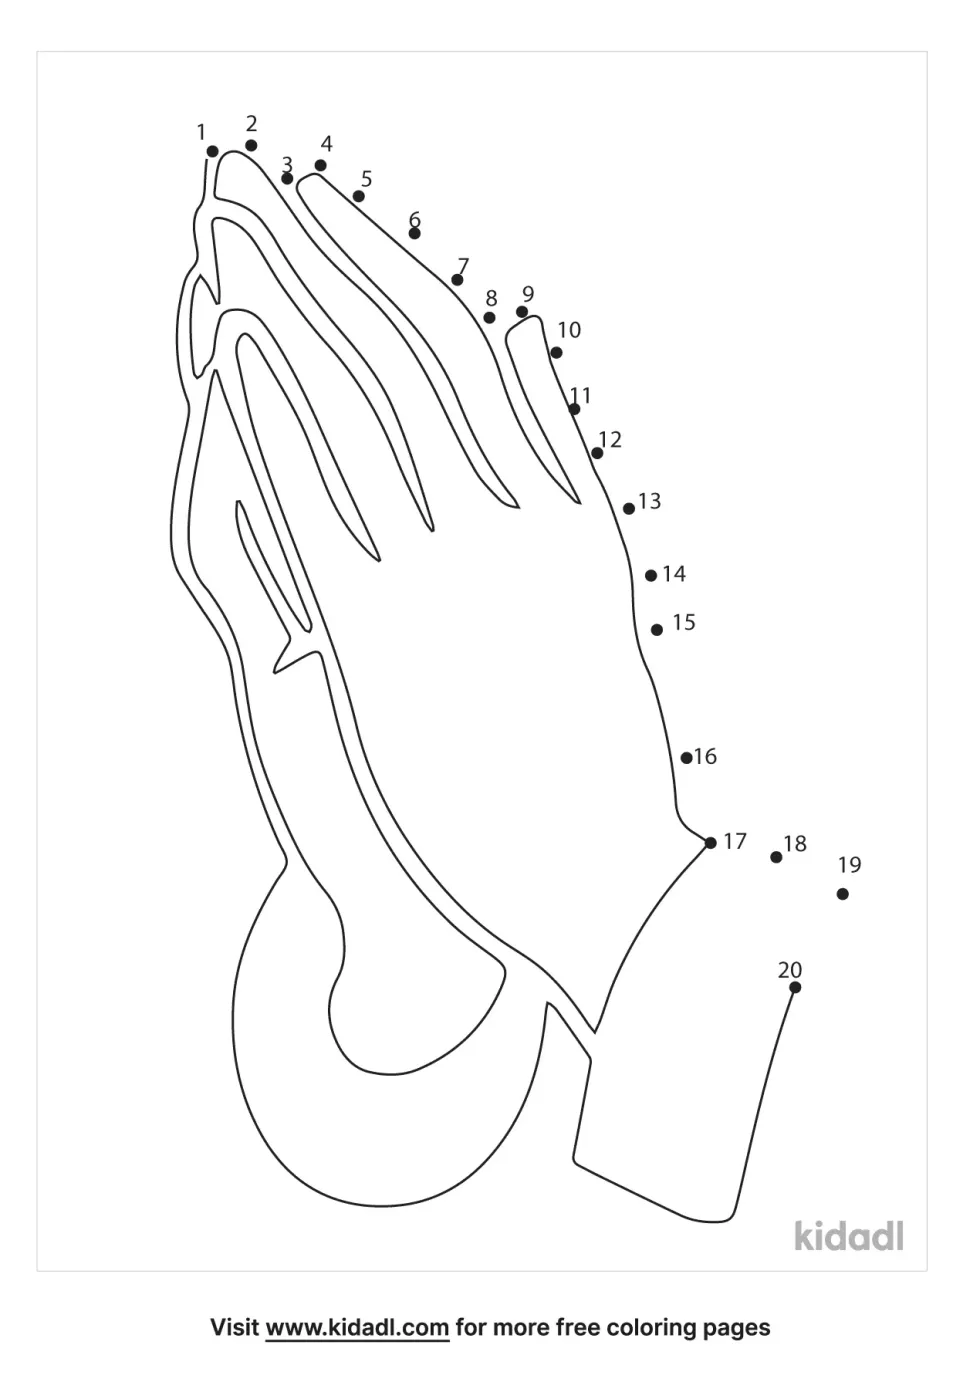 Bible Praying Hands